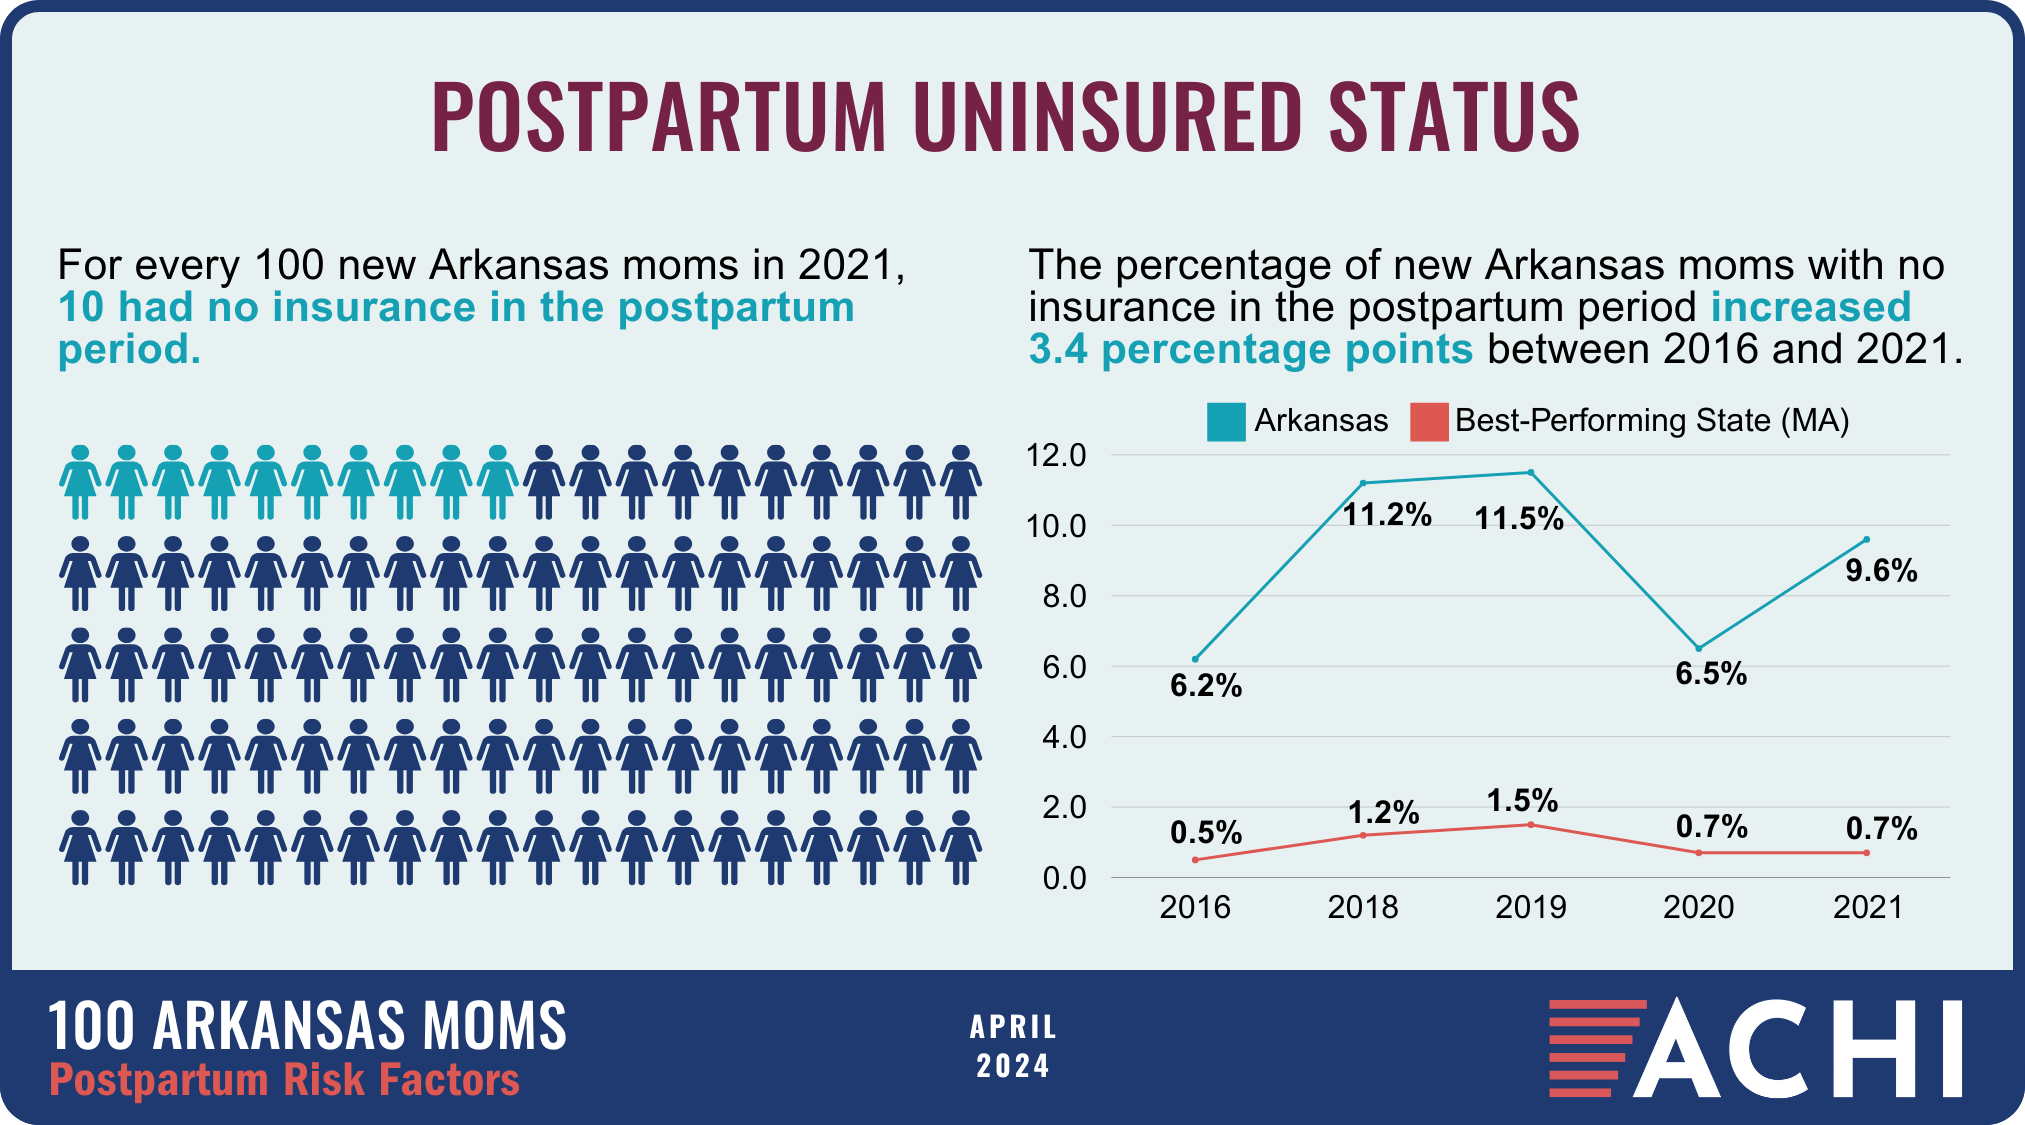 21_240418_100 Arkansas Moms_Postpartum Risk Factors_Uninsured Status